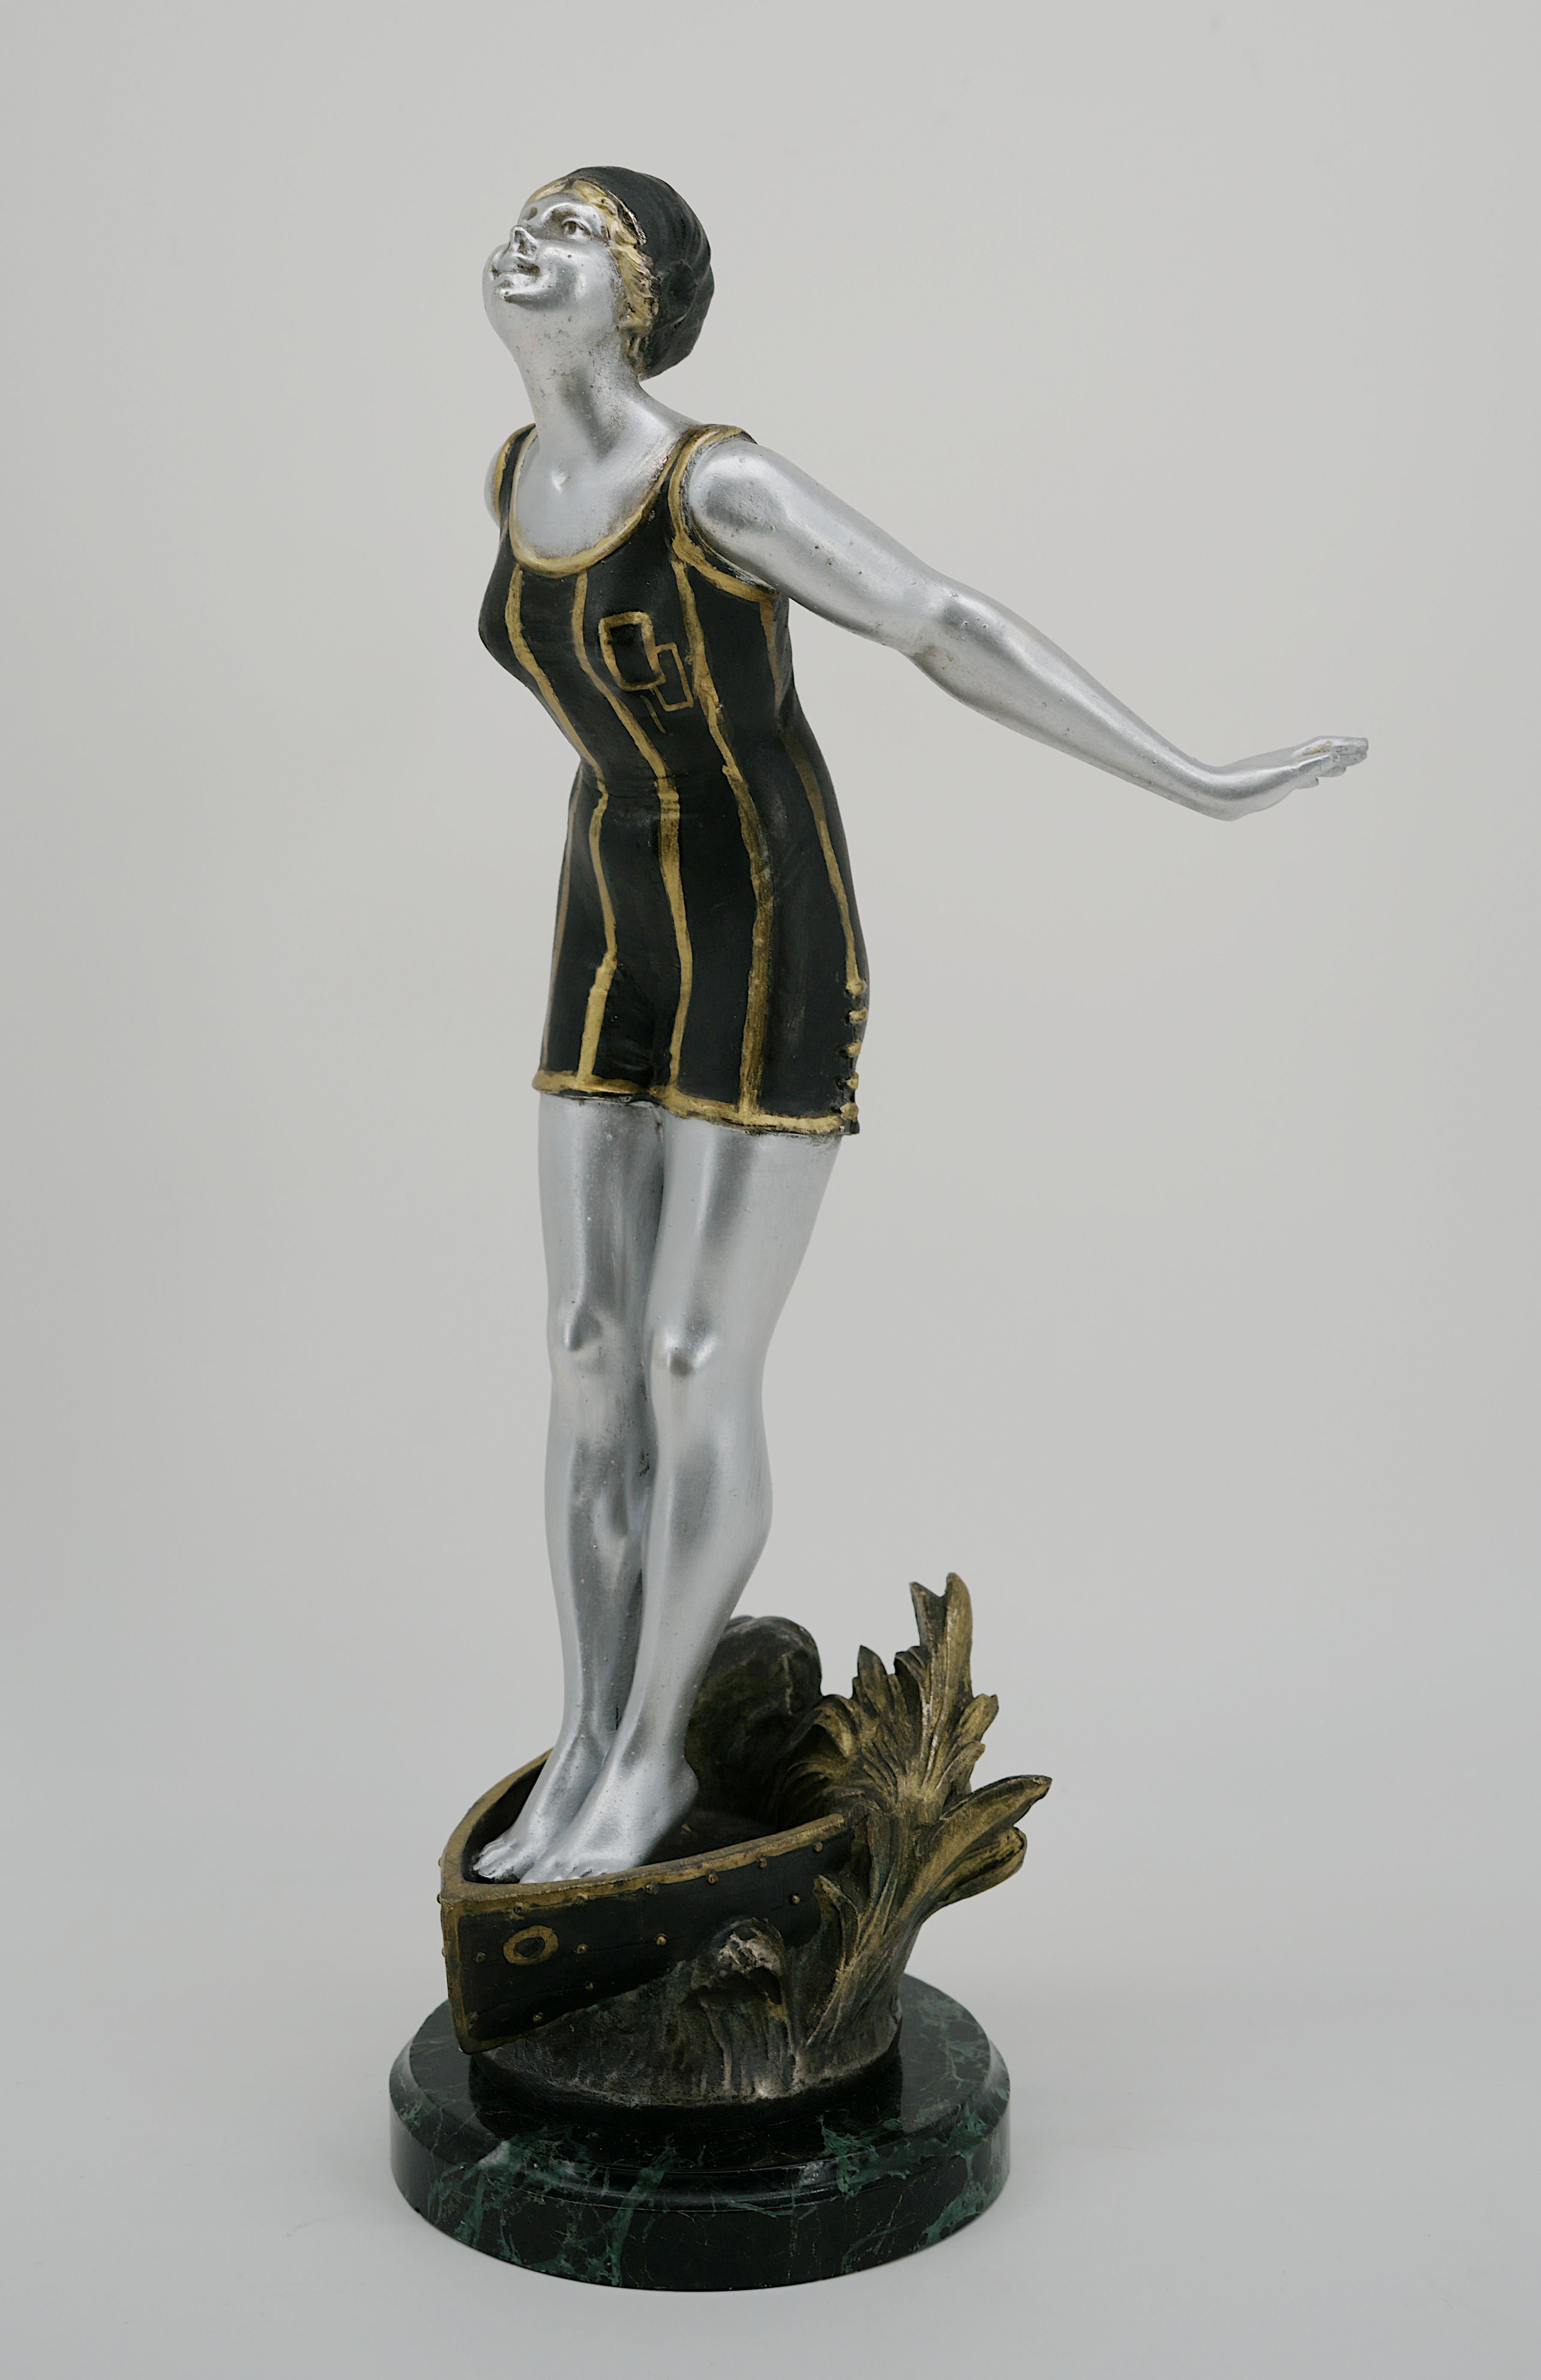 Zinc brut Sculpture de baigneur Art déco française, années 1930